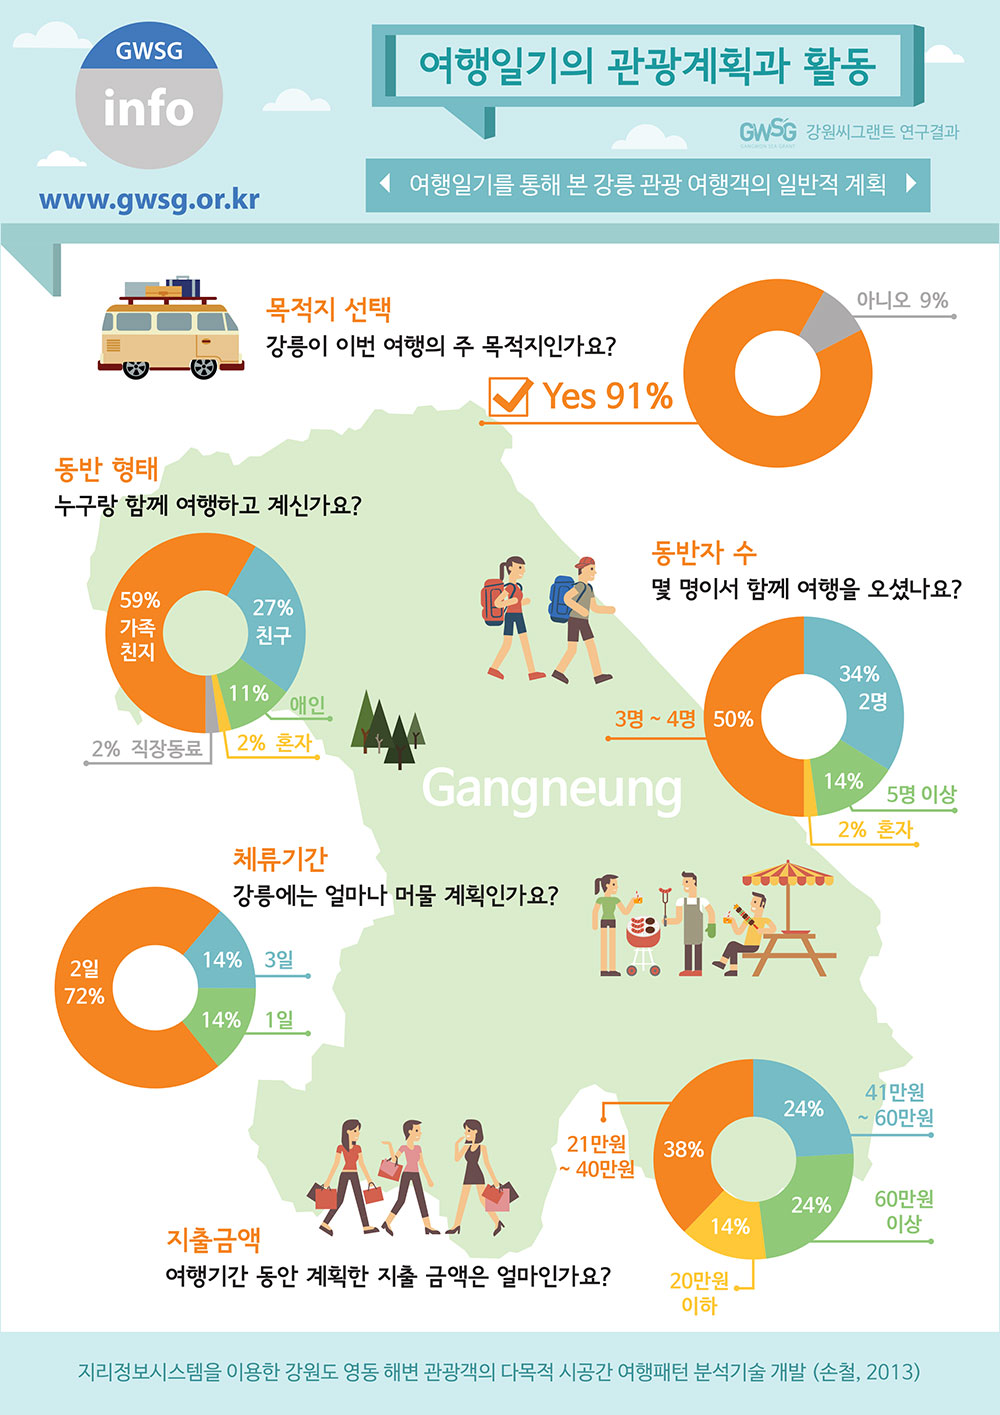 강릉 여행객 대상 설문 통계 인포그래픽